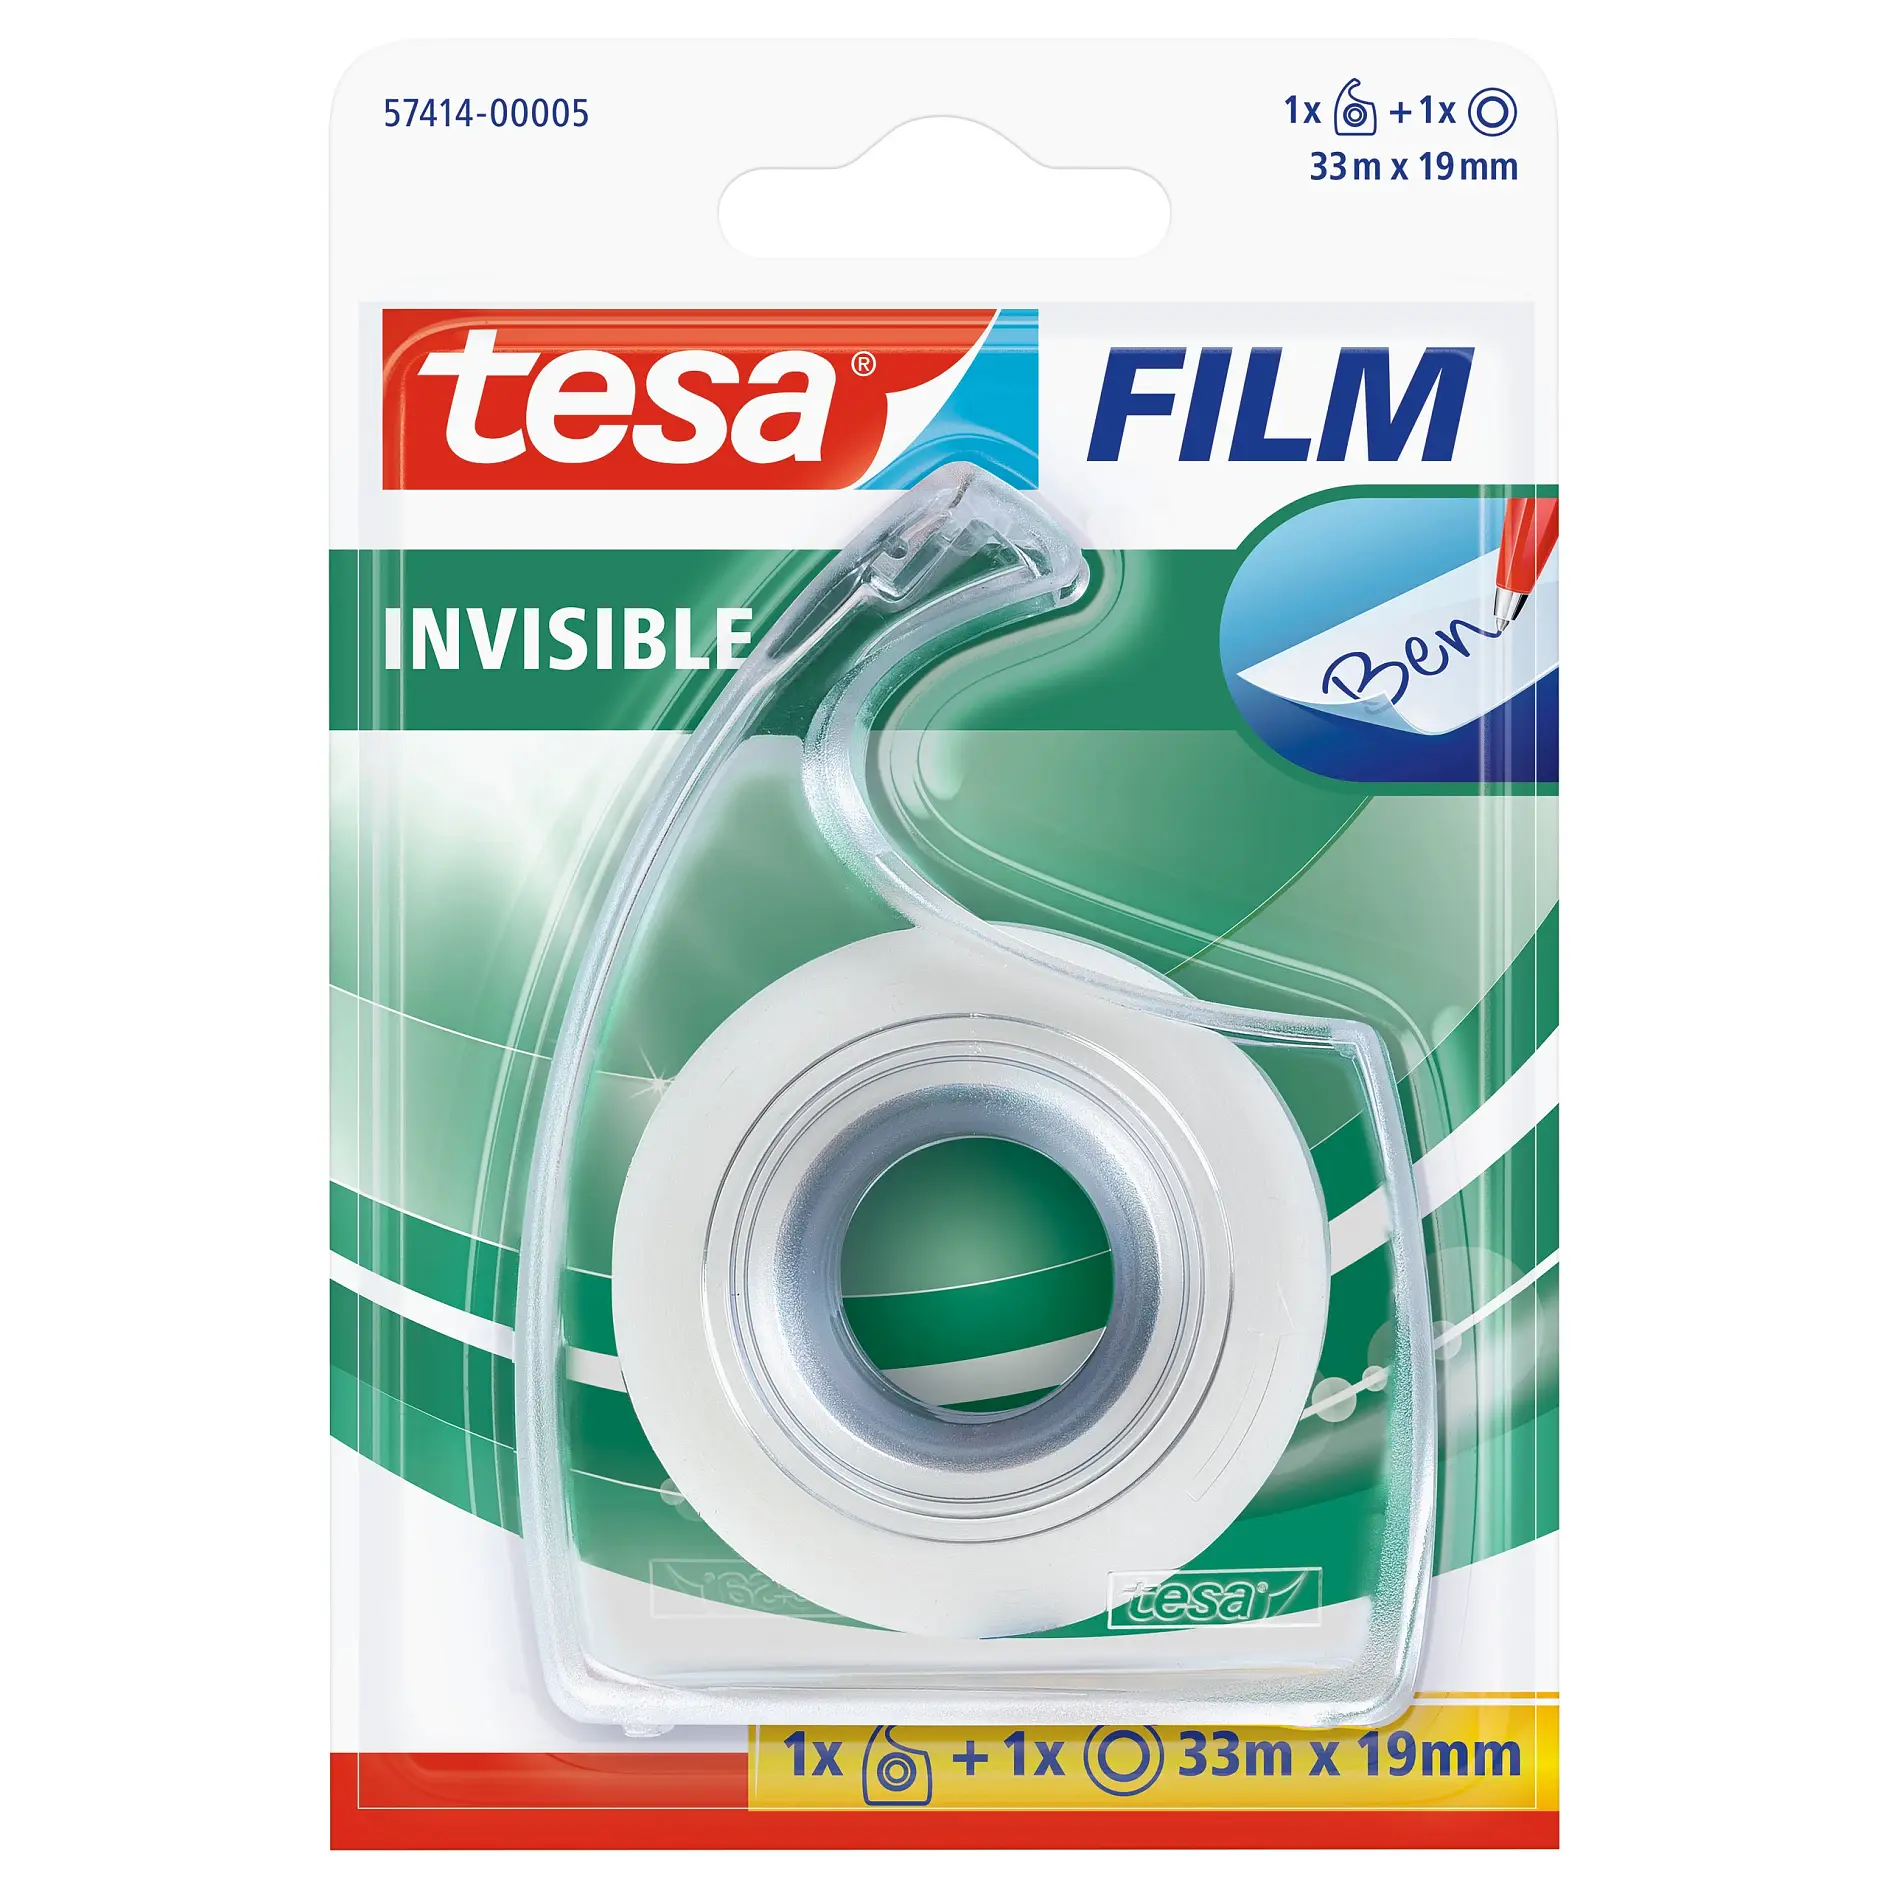 [en-en] 1 x tesafilm Invisible 33m x 19mm + Hand Dispenser, Blister